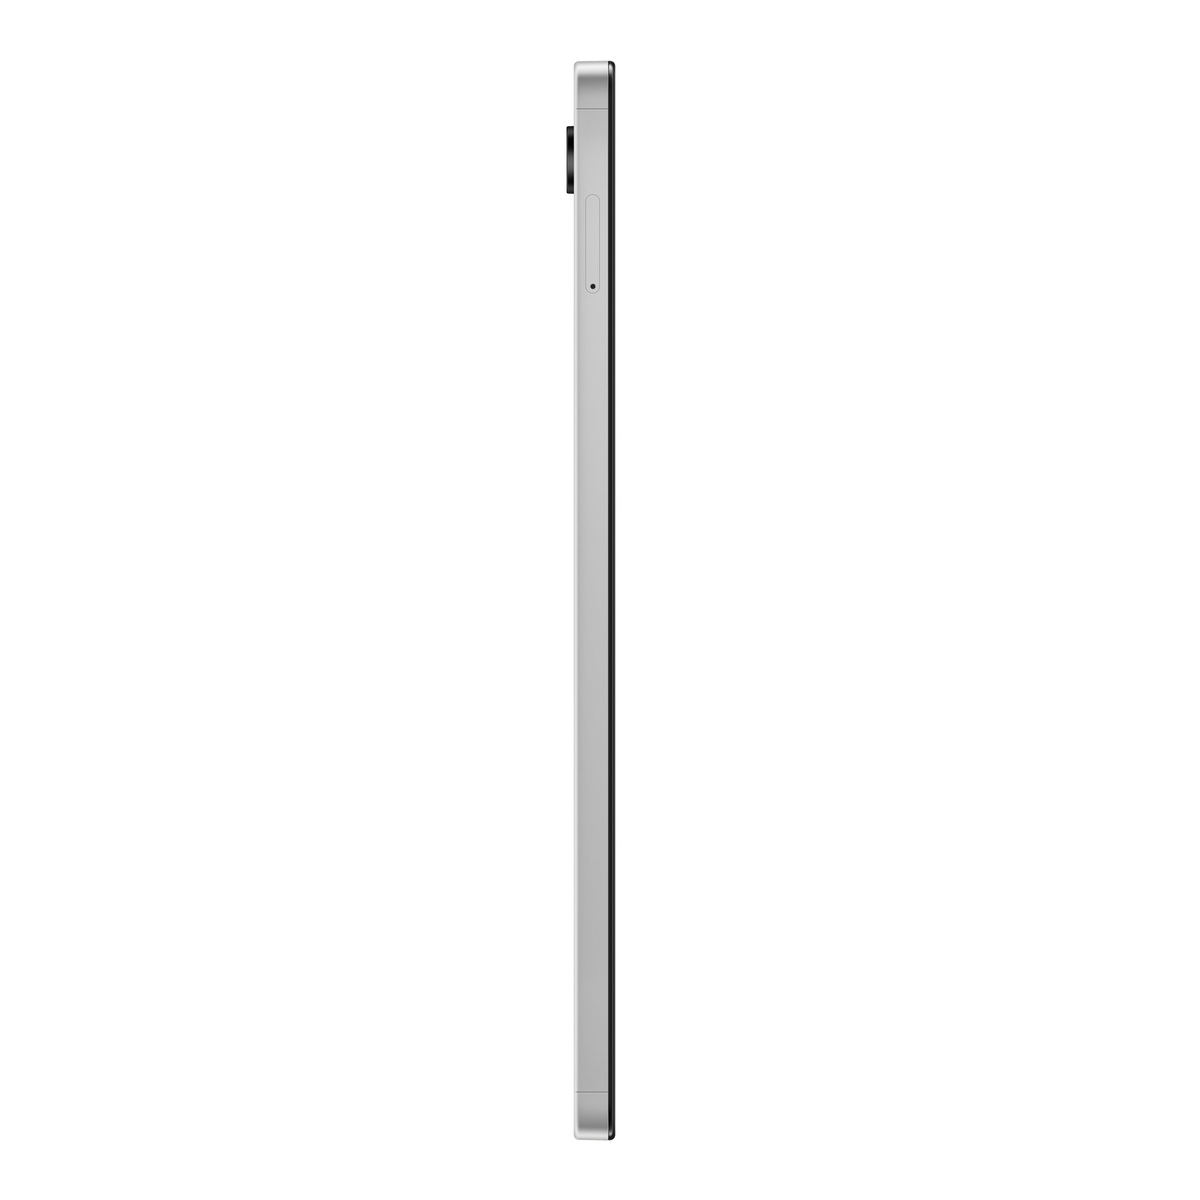 Samsung Galaxy Tab A9 Wi-Fi Tablet, 4 GB RAM, 64 GB Storage, Silver, SM-X110NZSAMEA